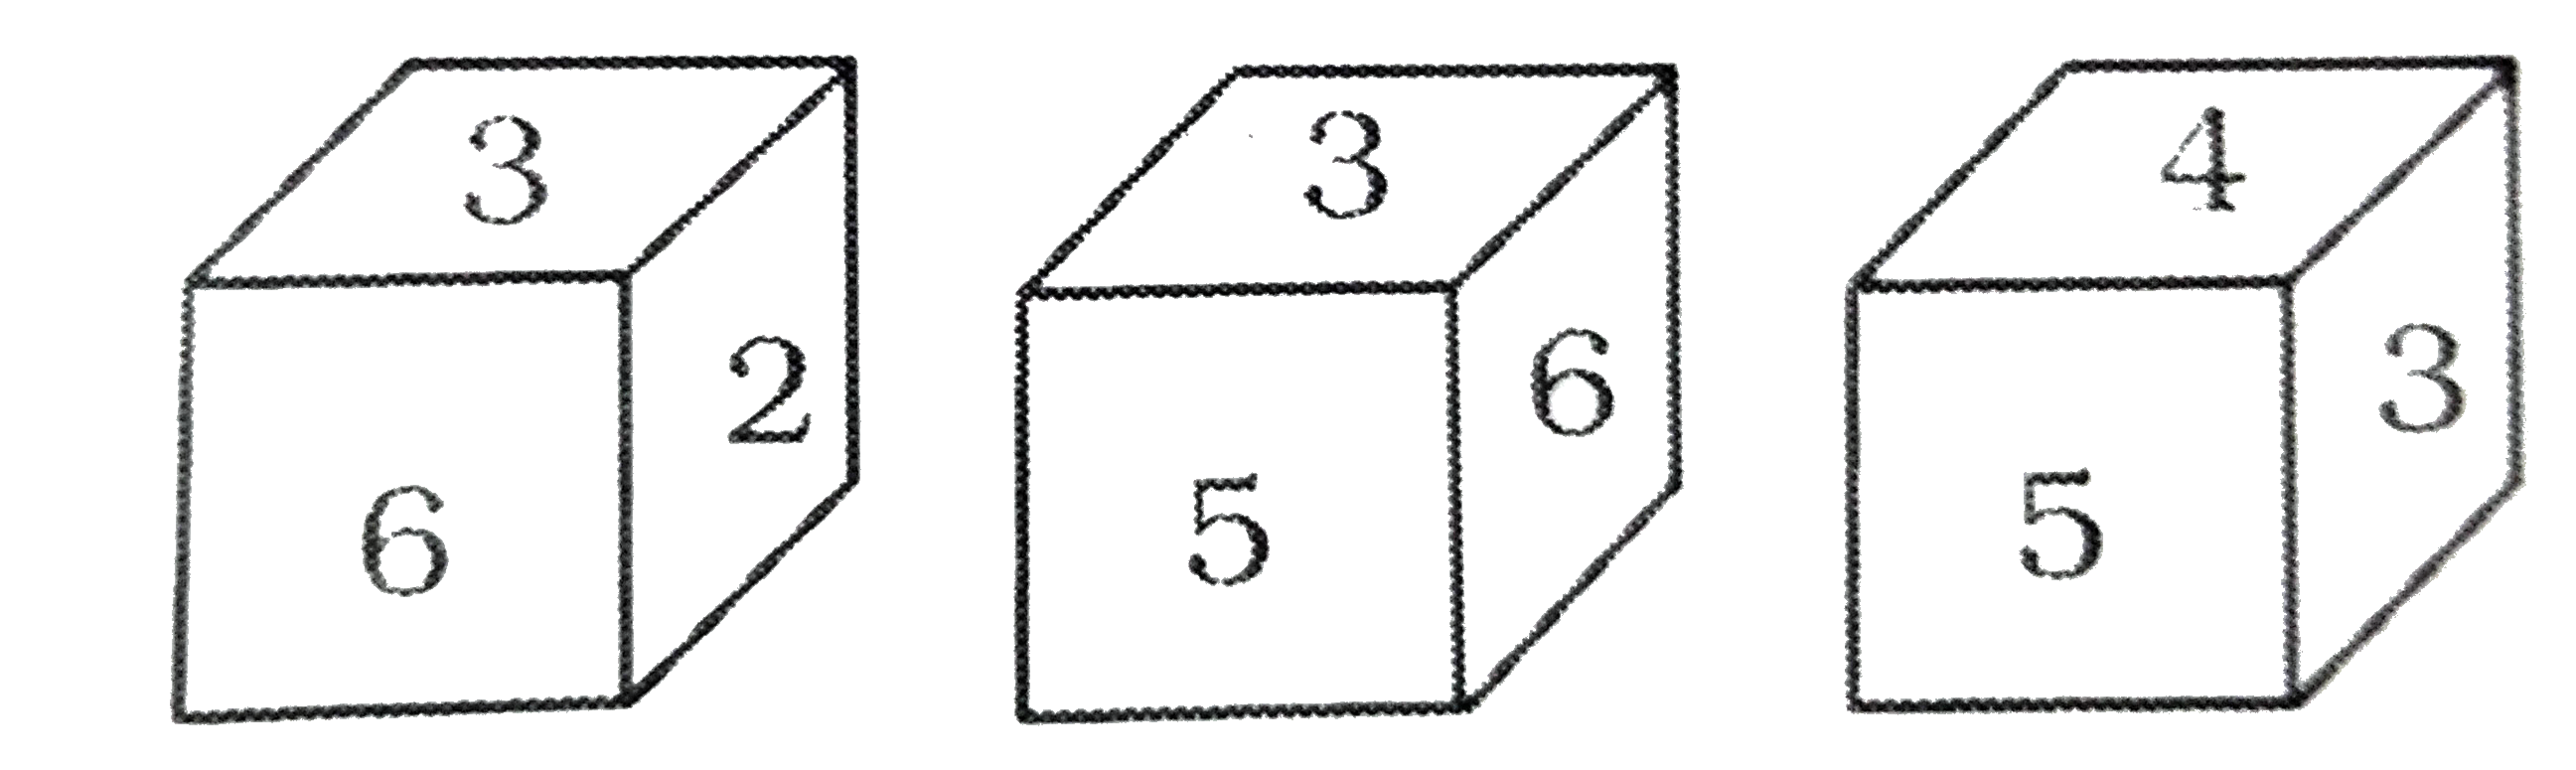 नीचे एक पासे की तीन स्थापना स्थितियों को दर्शाया गया है । संख्या 6 वाले फलक के विपरीत फलक की संख्या ज्ञात करें ।